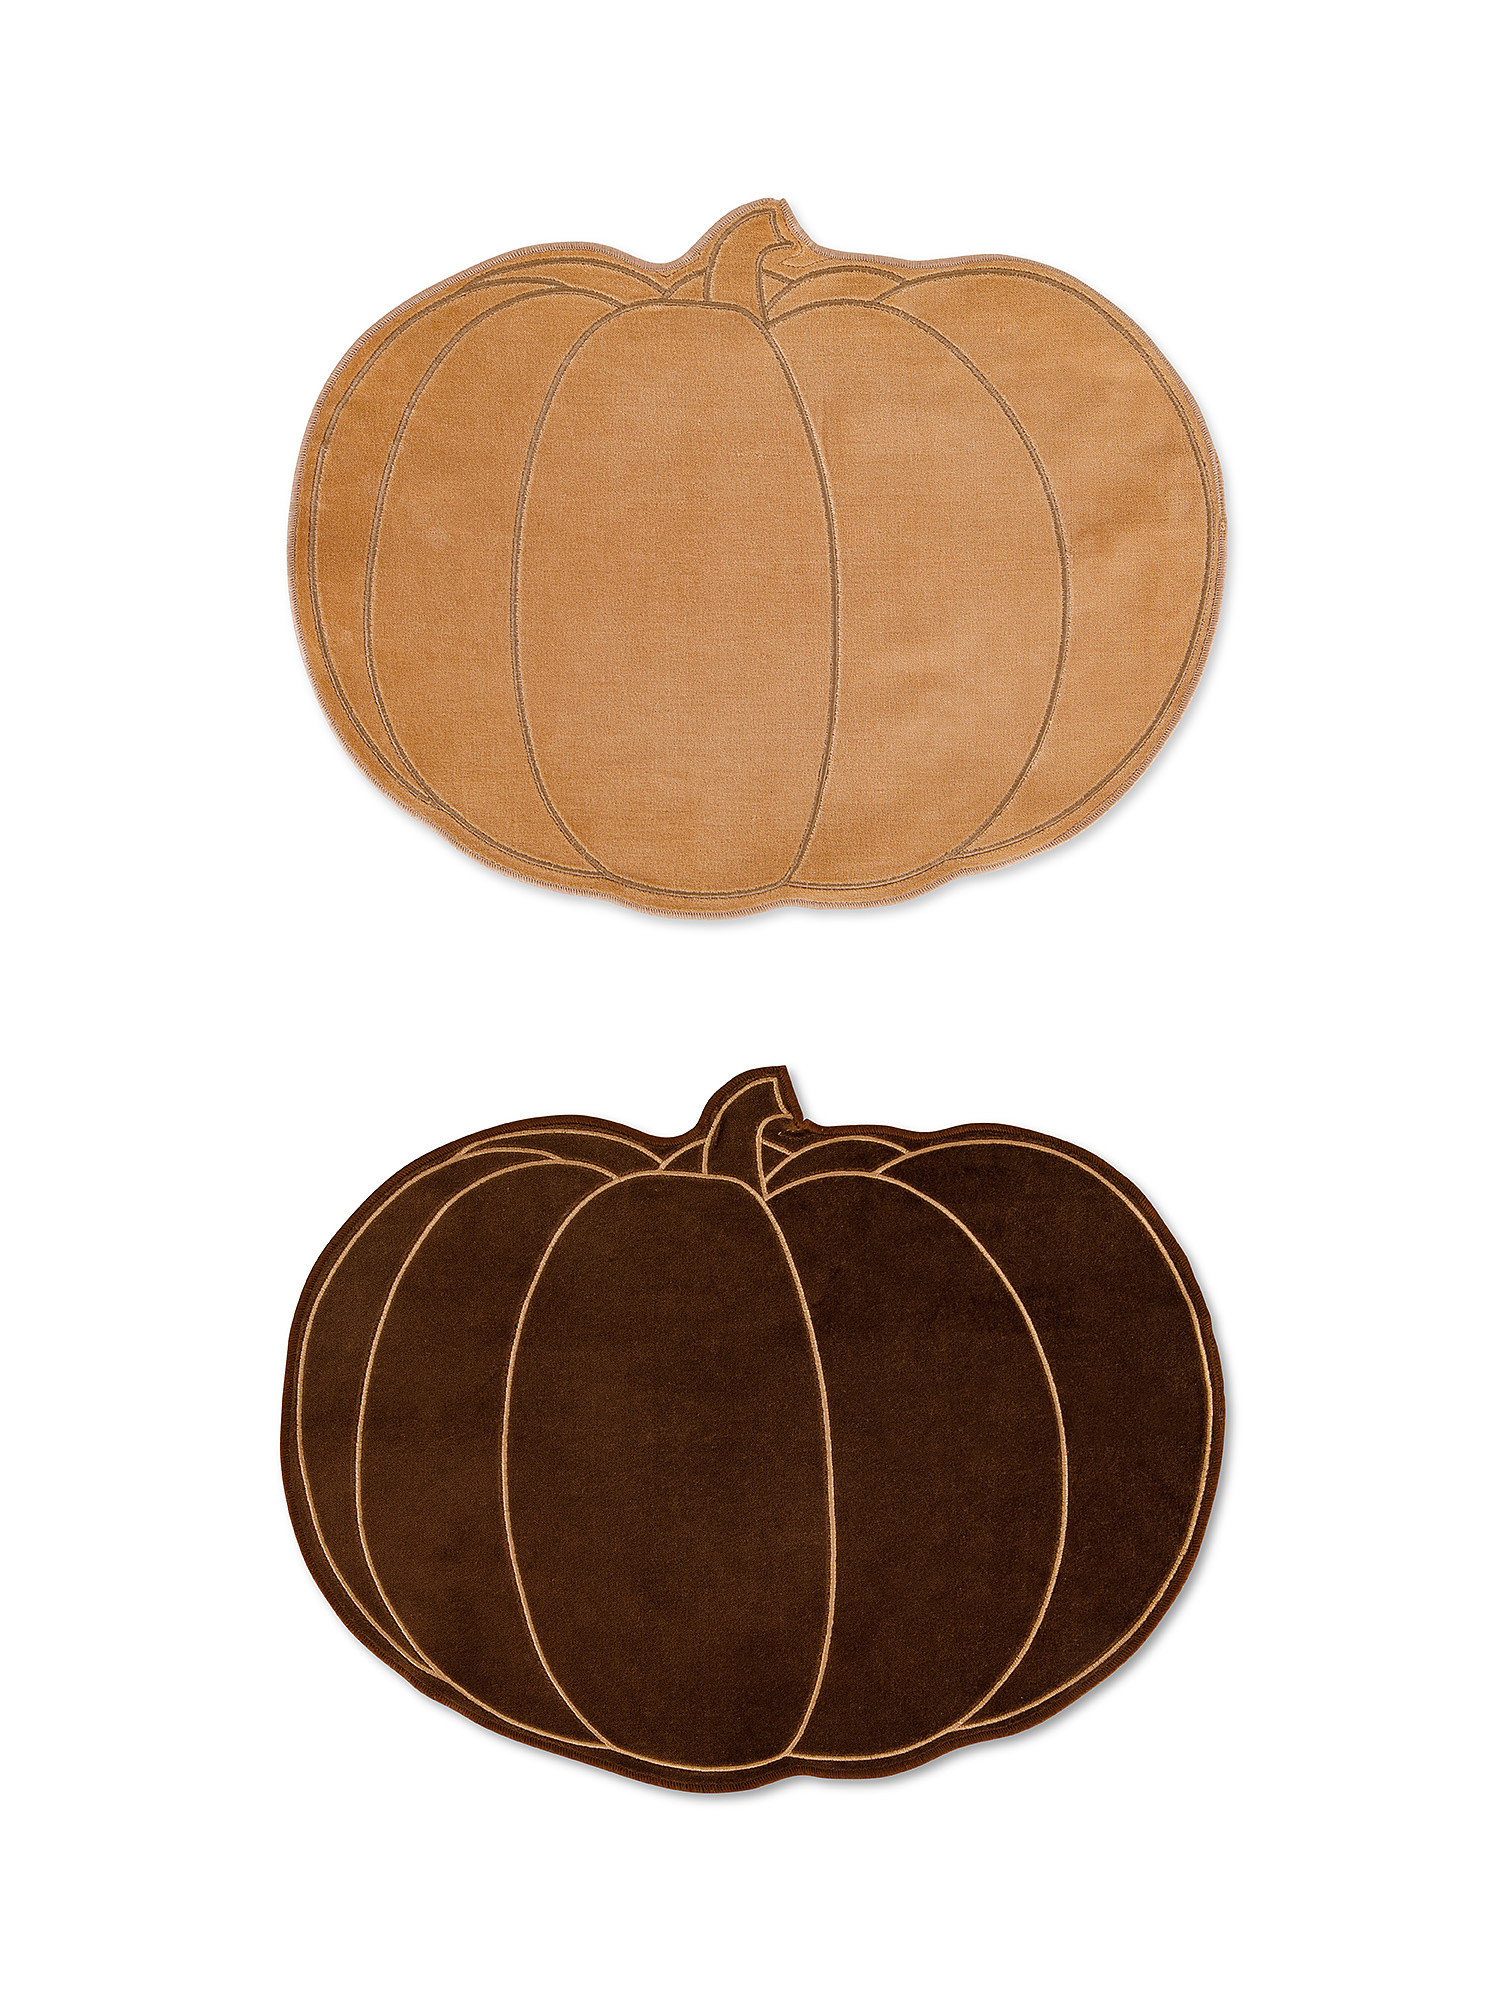 Cotton velvet pumpkin placemats, Multicolor, large image number 0